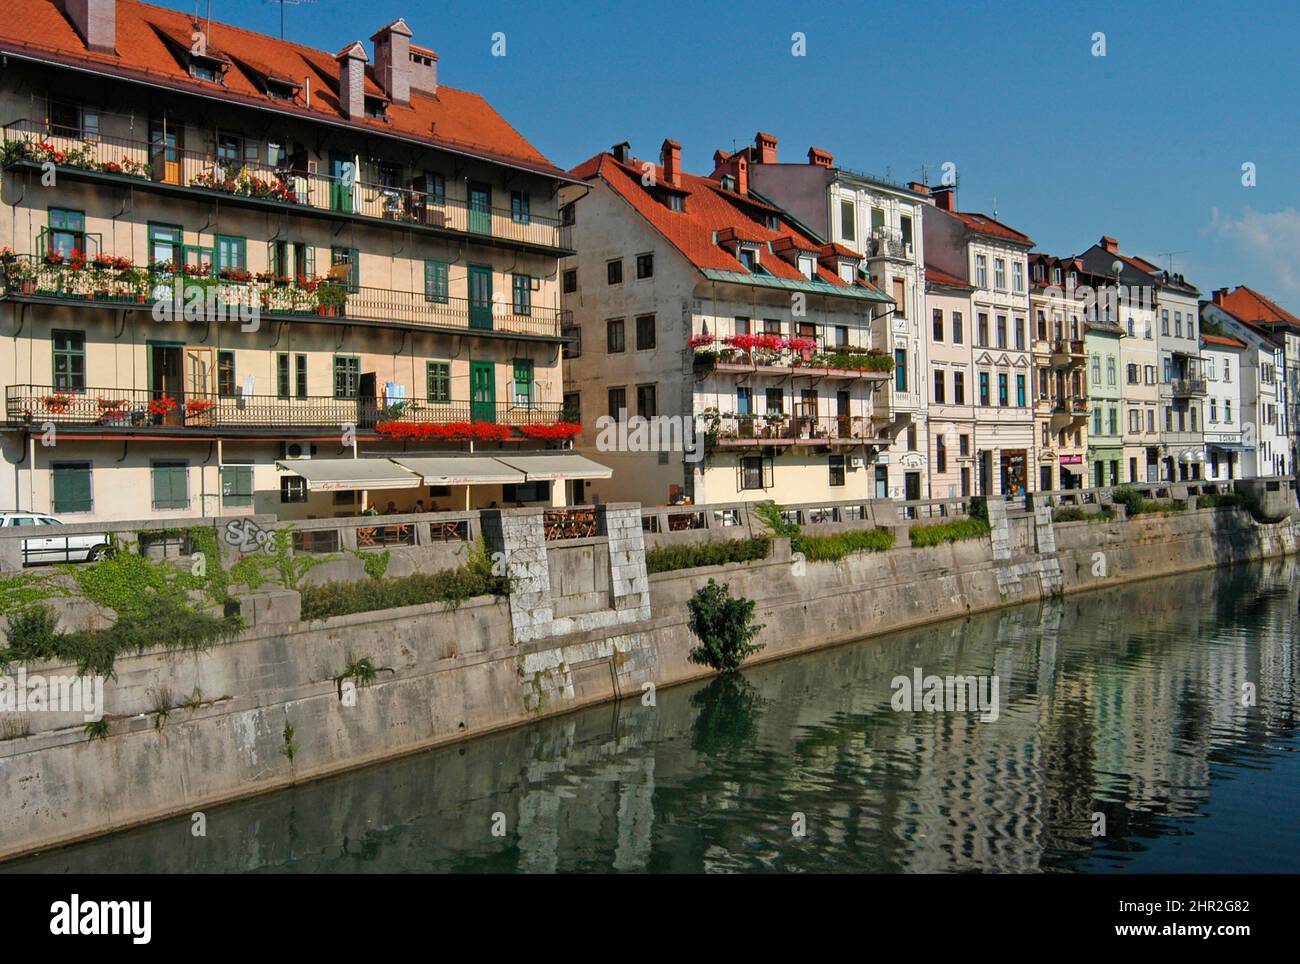 Ljubljanica river, Ljubljana, Slovenia Stock Photo